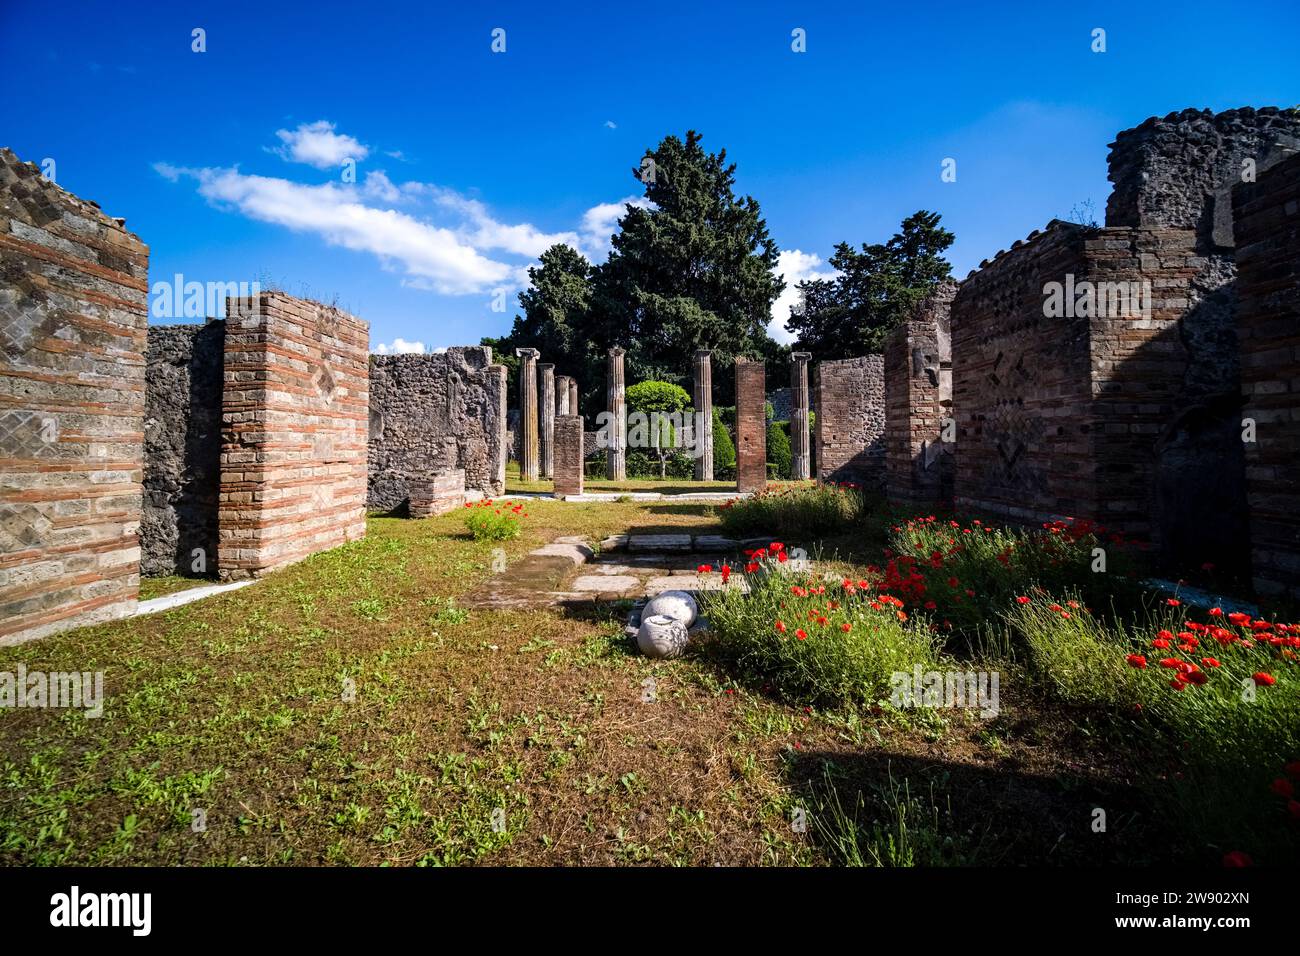 Ruinen der Casa del Gallo in der archäologischen Stätte von Pompeji, einer antiken Stadt, die durch den Ausbruch des Vesuv im Jahr 79 n. Chr. zerstört wurde. Stockfoto